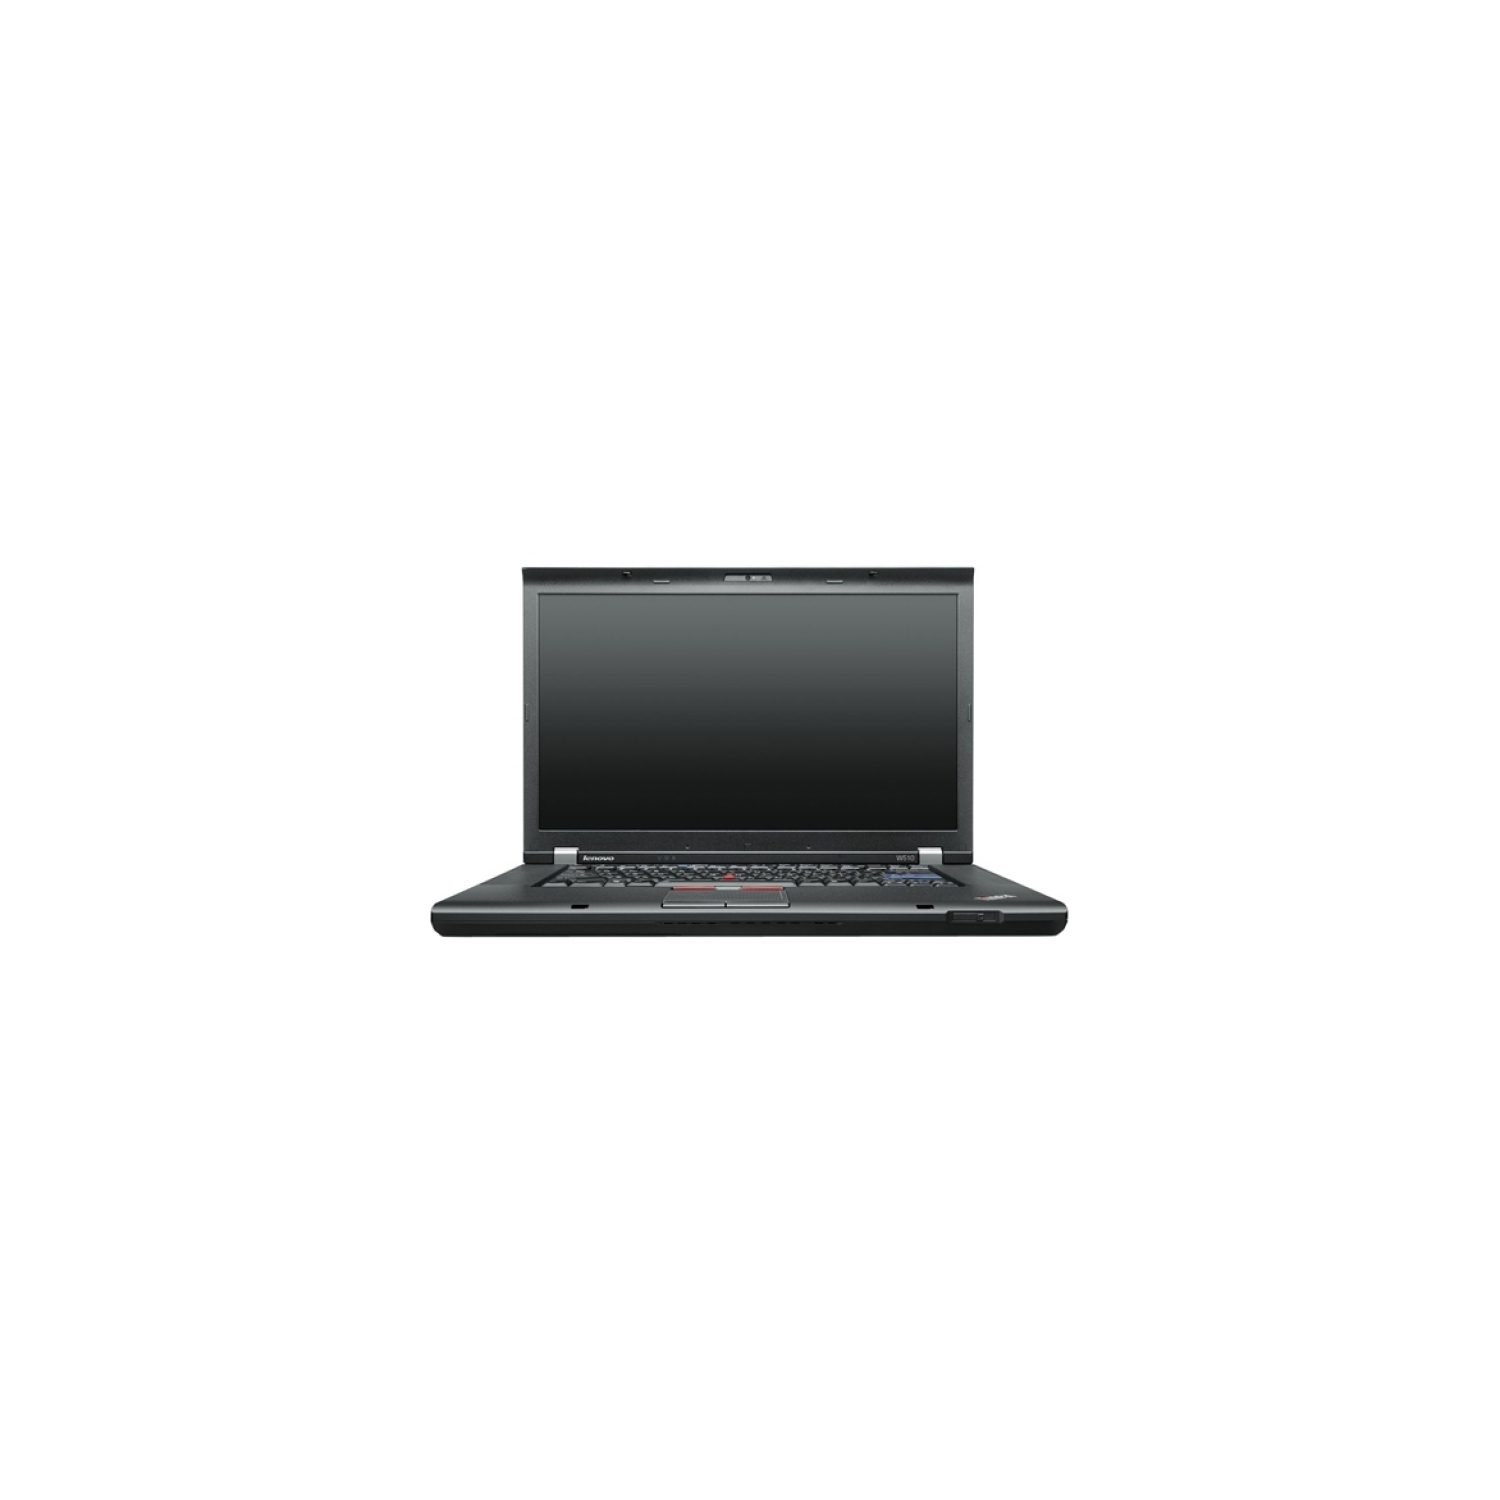 Refurbished (Good) - Lenovo ThinkPad W541 15.6" Workstation Laptop Intel Core i74810MQ 2.8Ghz 8GB 256GB SSD Nvidia Quadro K1100M Intel HD4600 1GB Video Card Win 10 Pro